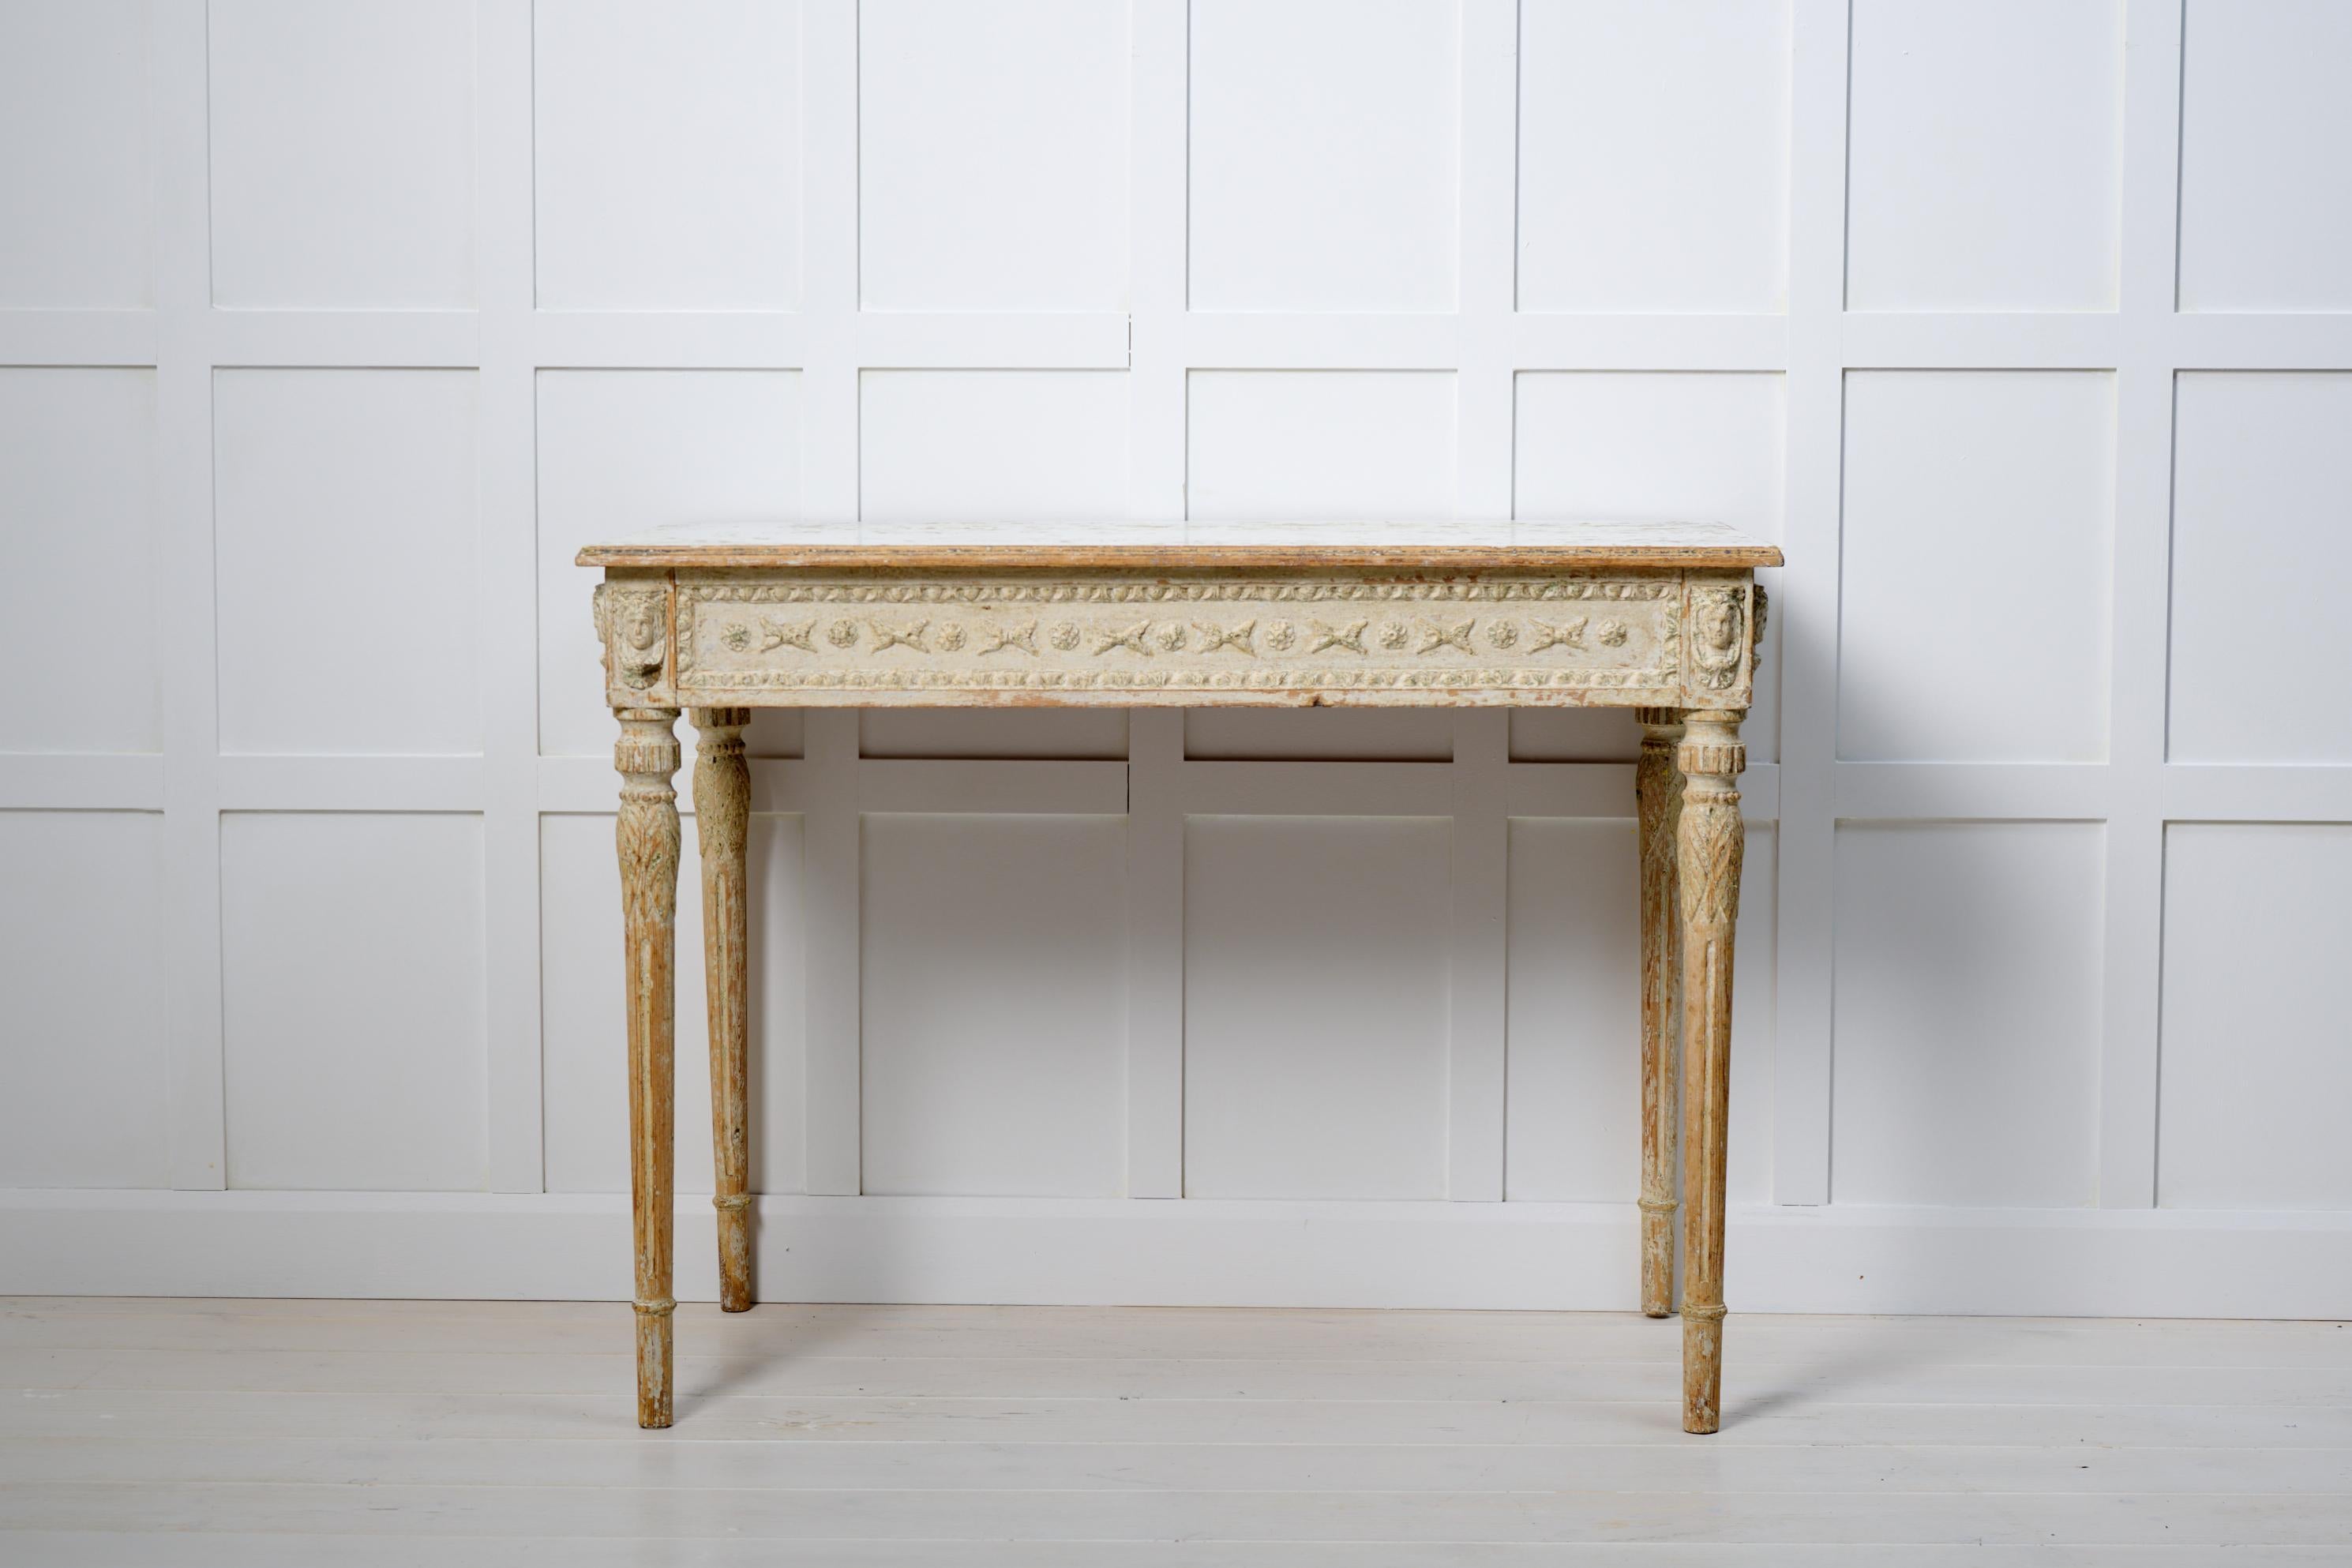 Schwedischer Konsolentisch aus lackierter Kiefer im gustavischen Stil. Der Tisch ist um 1790 bis 1800 entstanden und hat ein detailliert geschnitztes Holzdekor. Die Oberfläche wurde von Hand bis zur ursprünglichen Farbe abgekratzt, wodurch eine